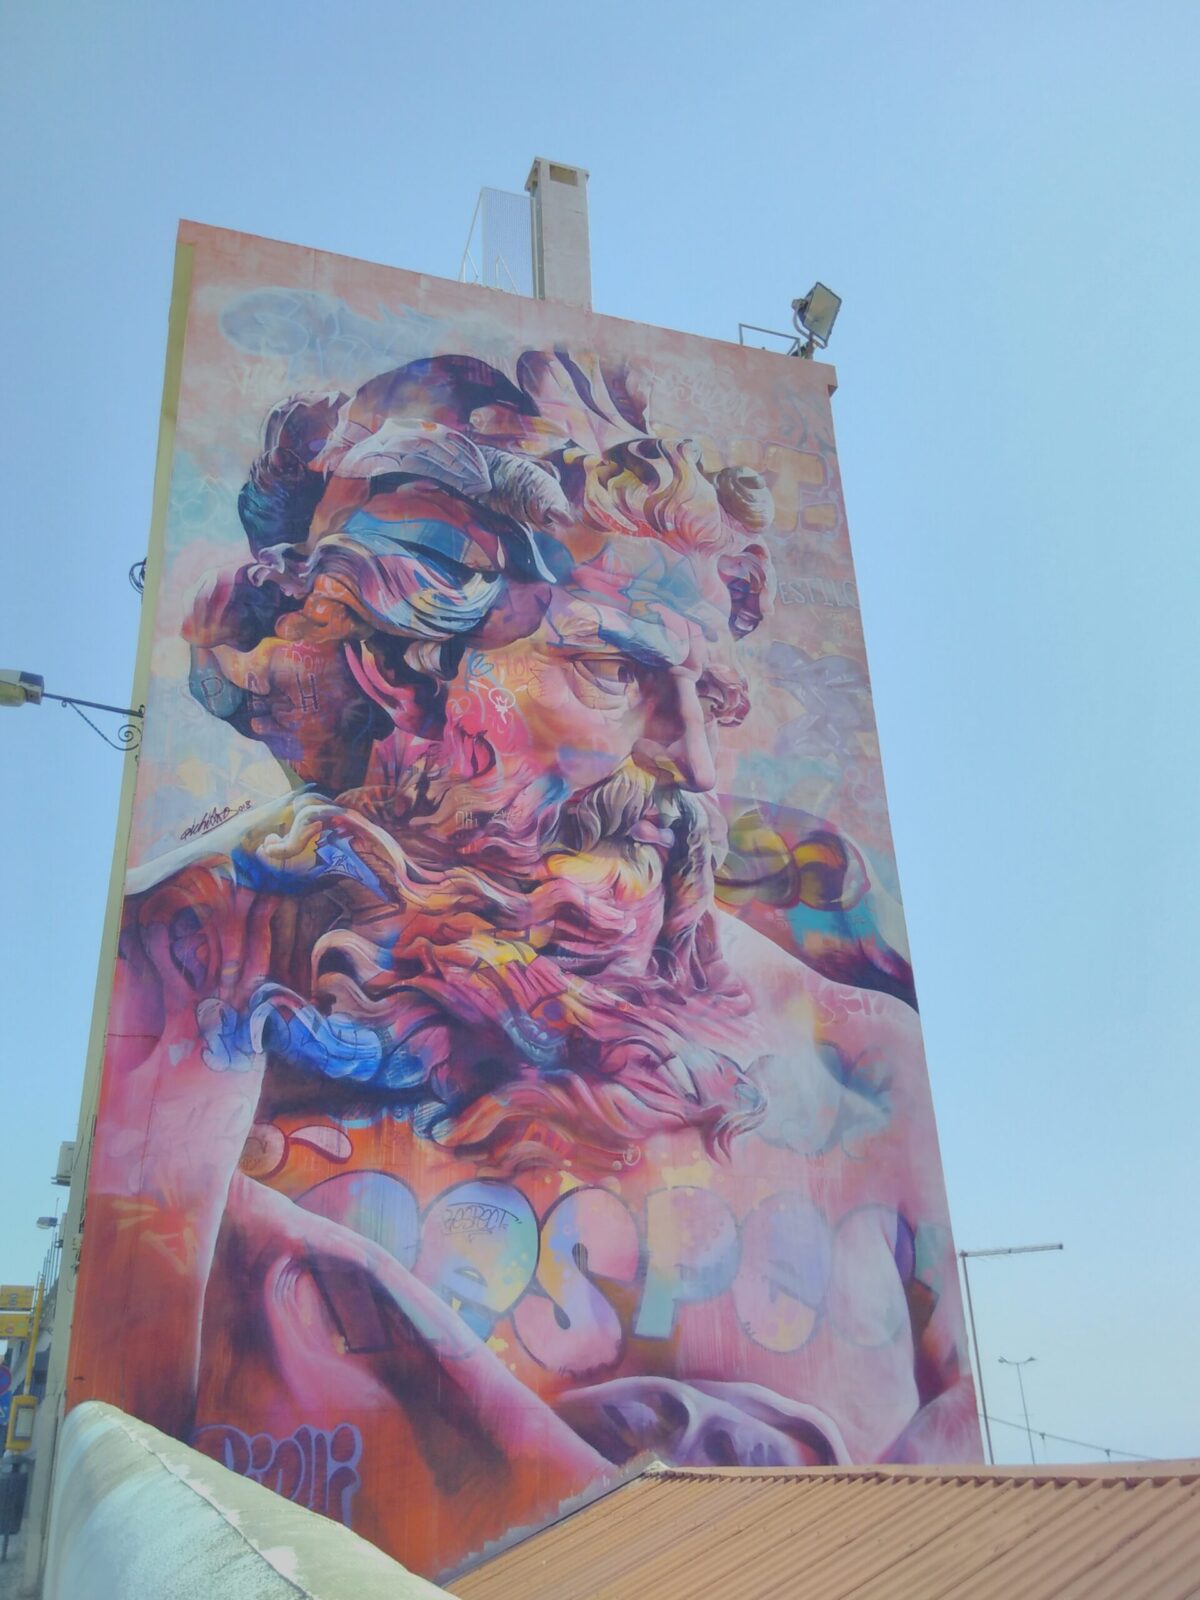 PichiAvo_mural_at_Calçada_de_Santa_Apolónia